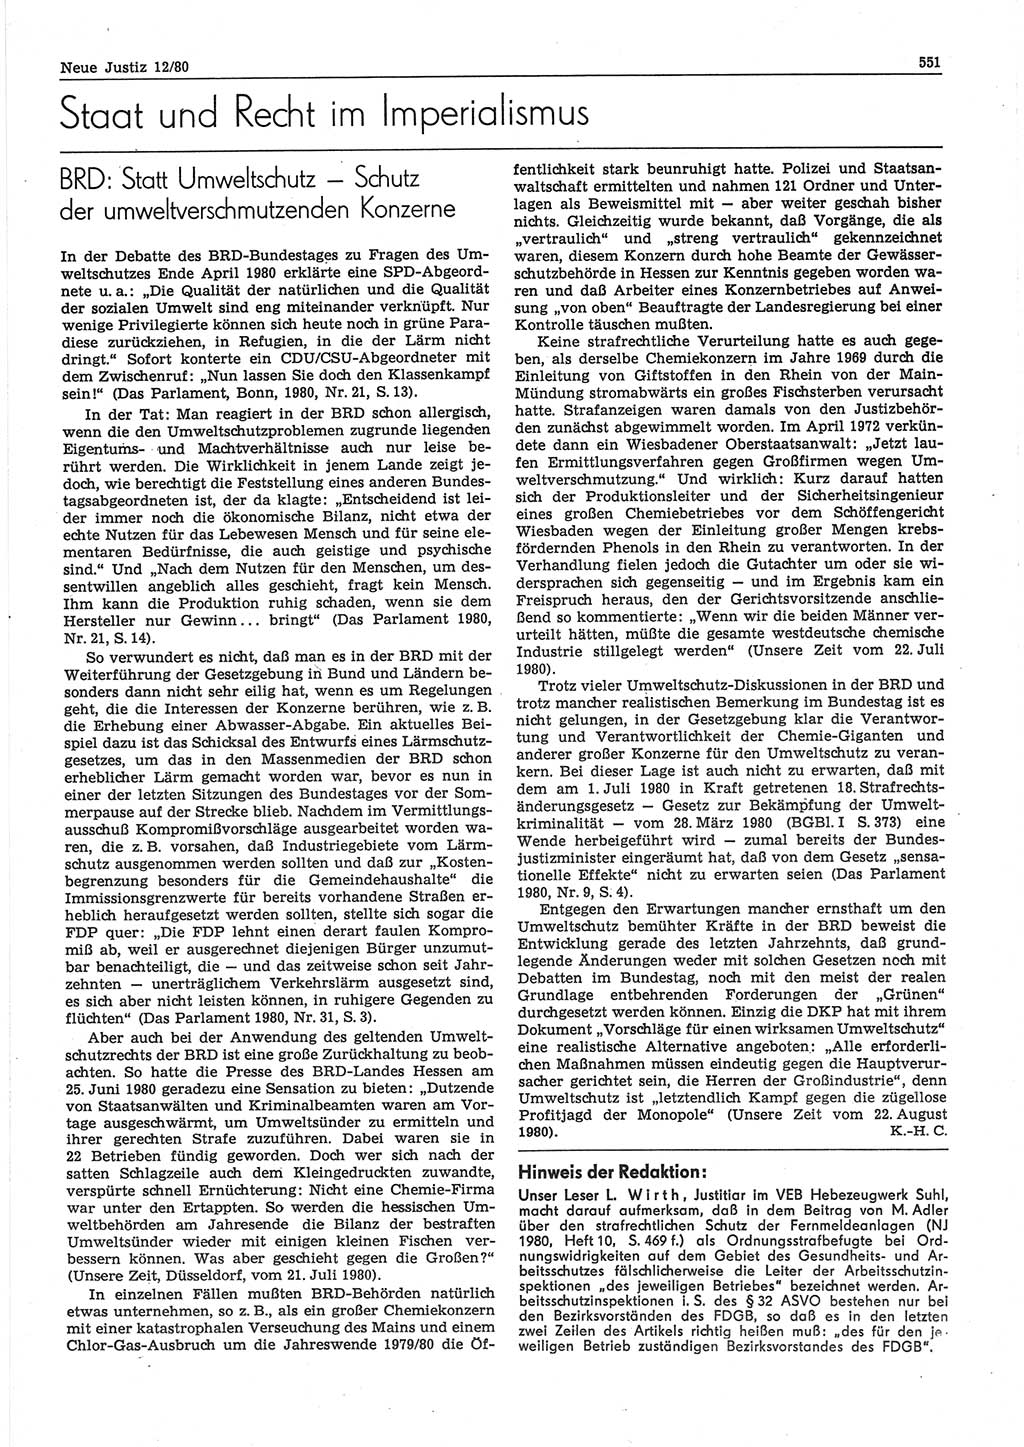 Neue Justiz (NJ), Zeitschrift für sozialistisches Recht und Gesetzlichkeit [Deutsche Demokratische Republik (DDR)], 34. Jahrgang 1980, Seite 551 (NJ DDR 1980, S. 551)